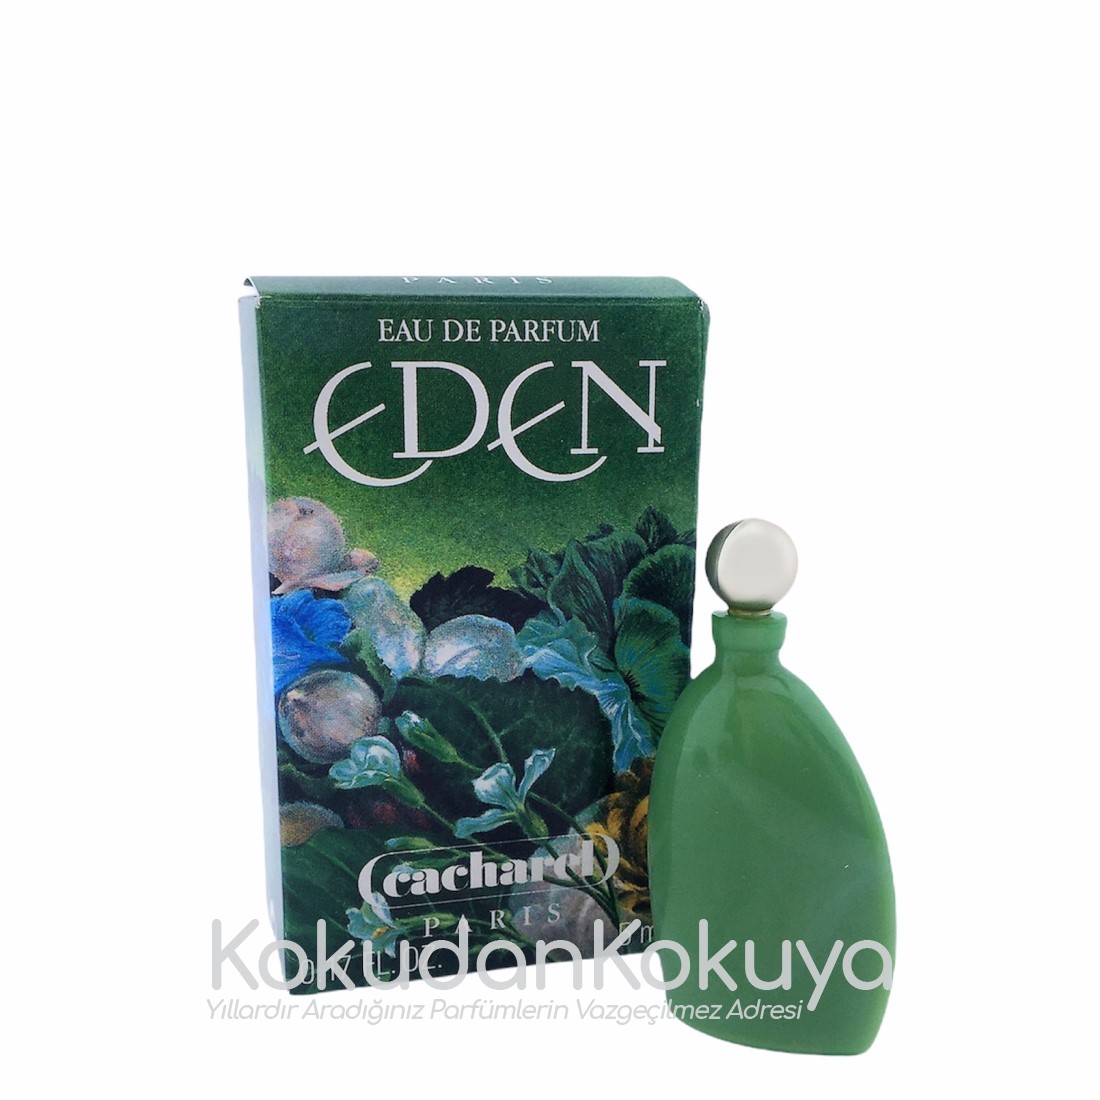 CACHAREL Eden (Vintage) Parfüm Kadın 5ml Minyatür (Mini Perfume) Dökme 